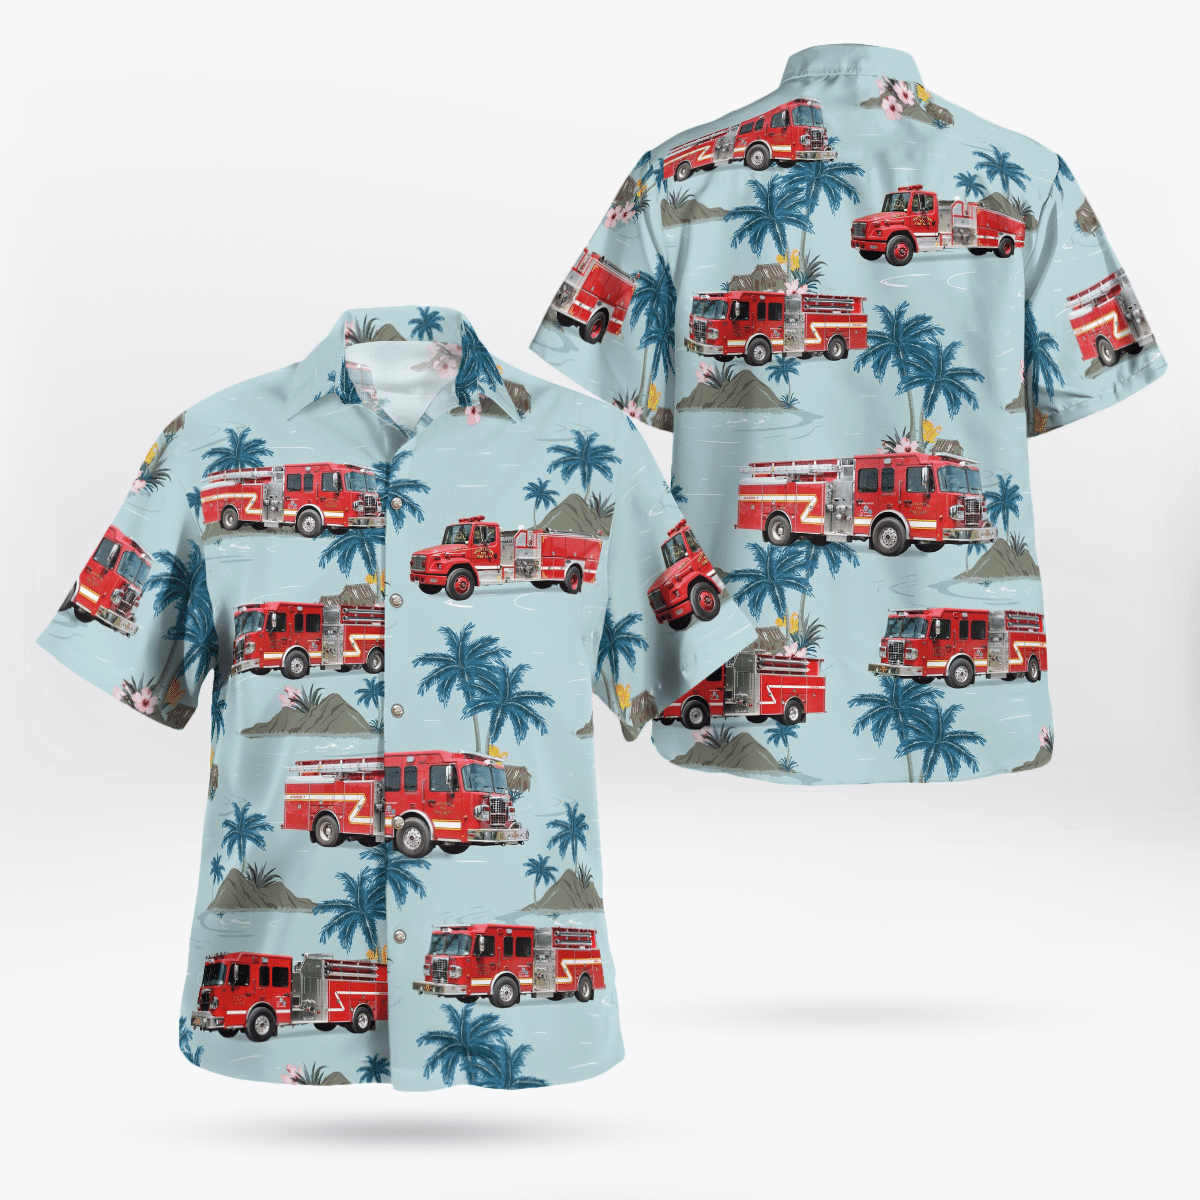 HOT Huddleston Fire Department Hawaiian Shirt1